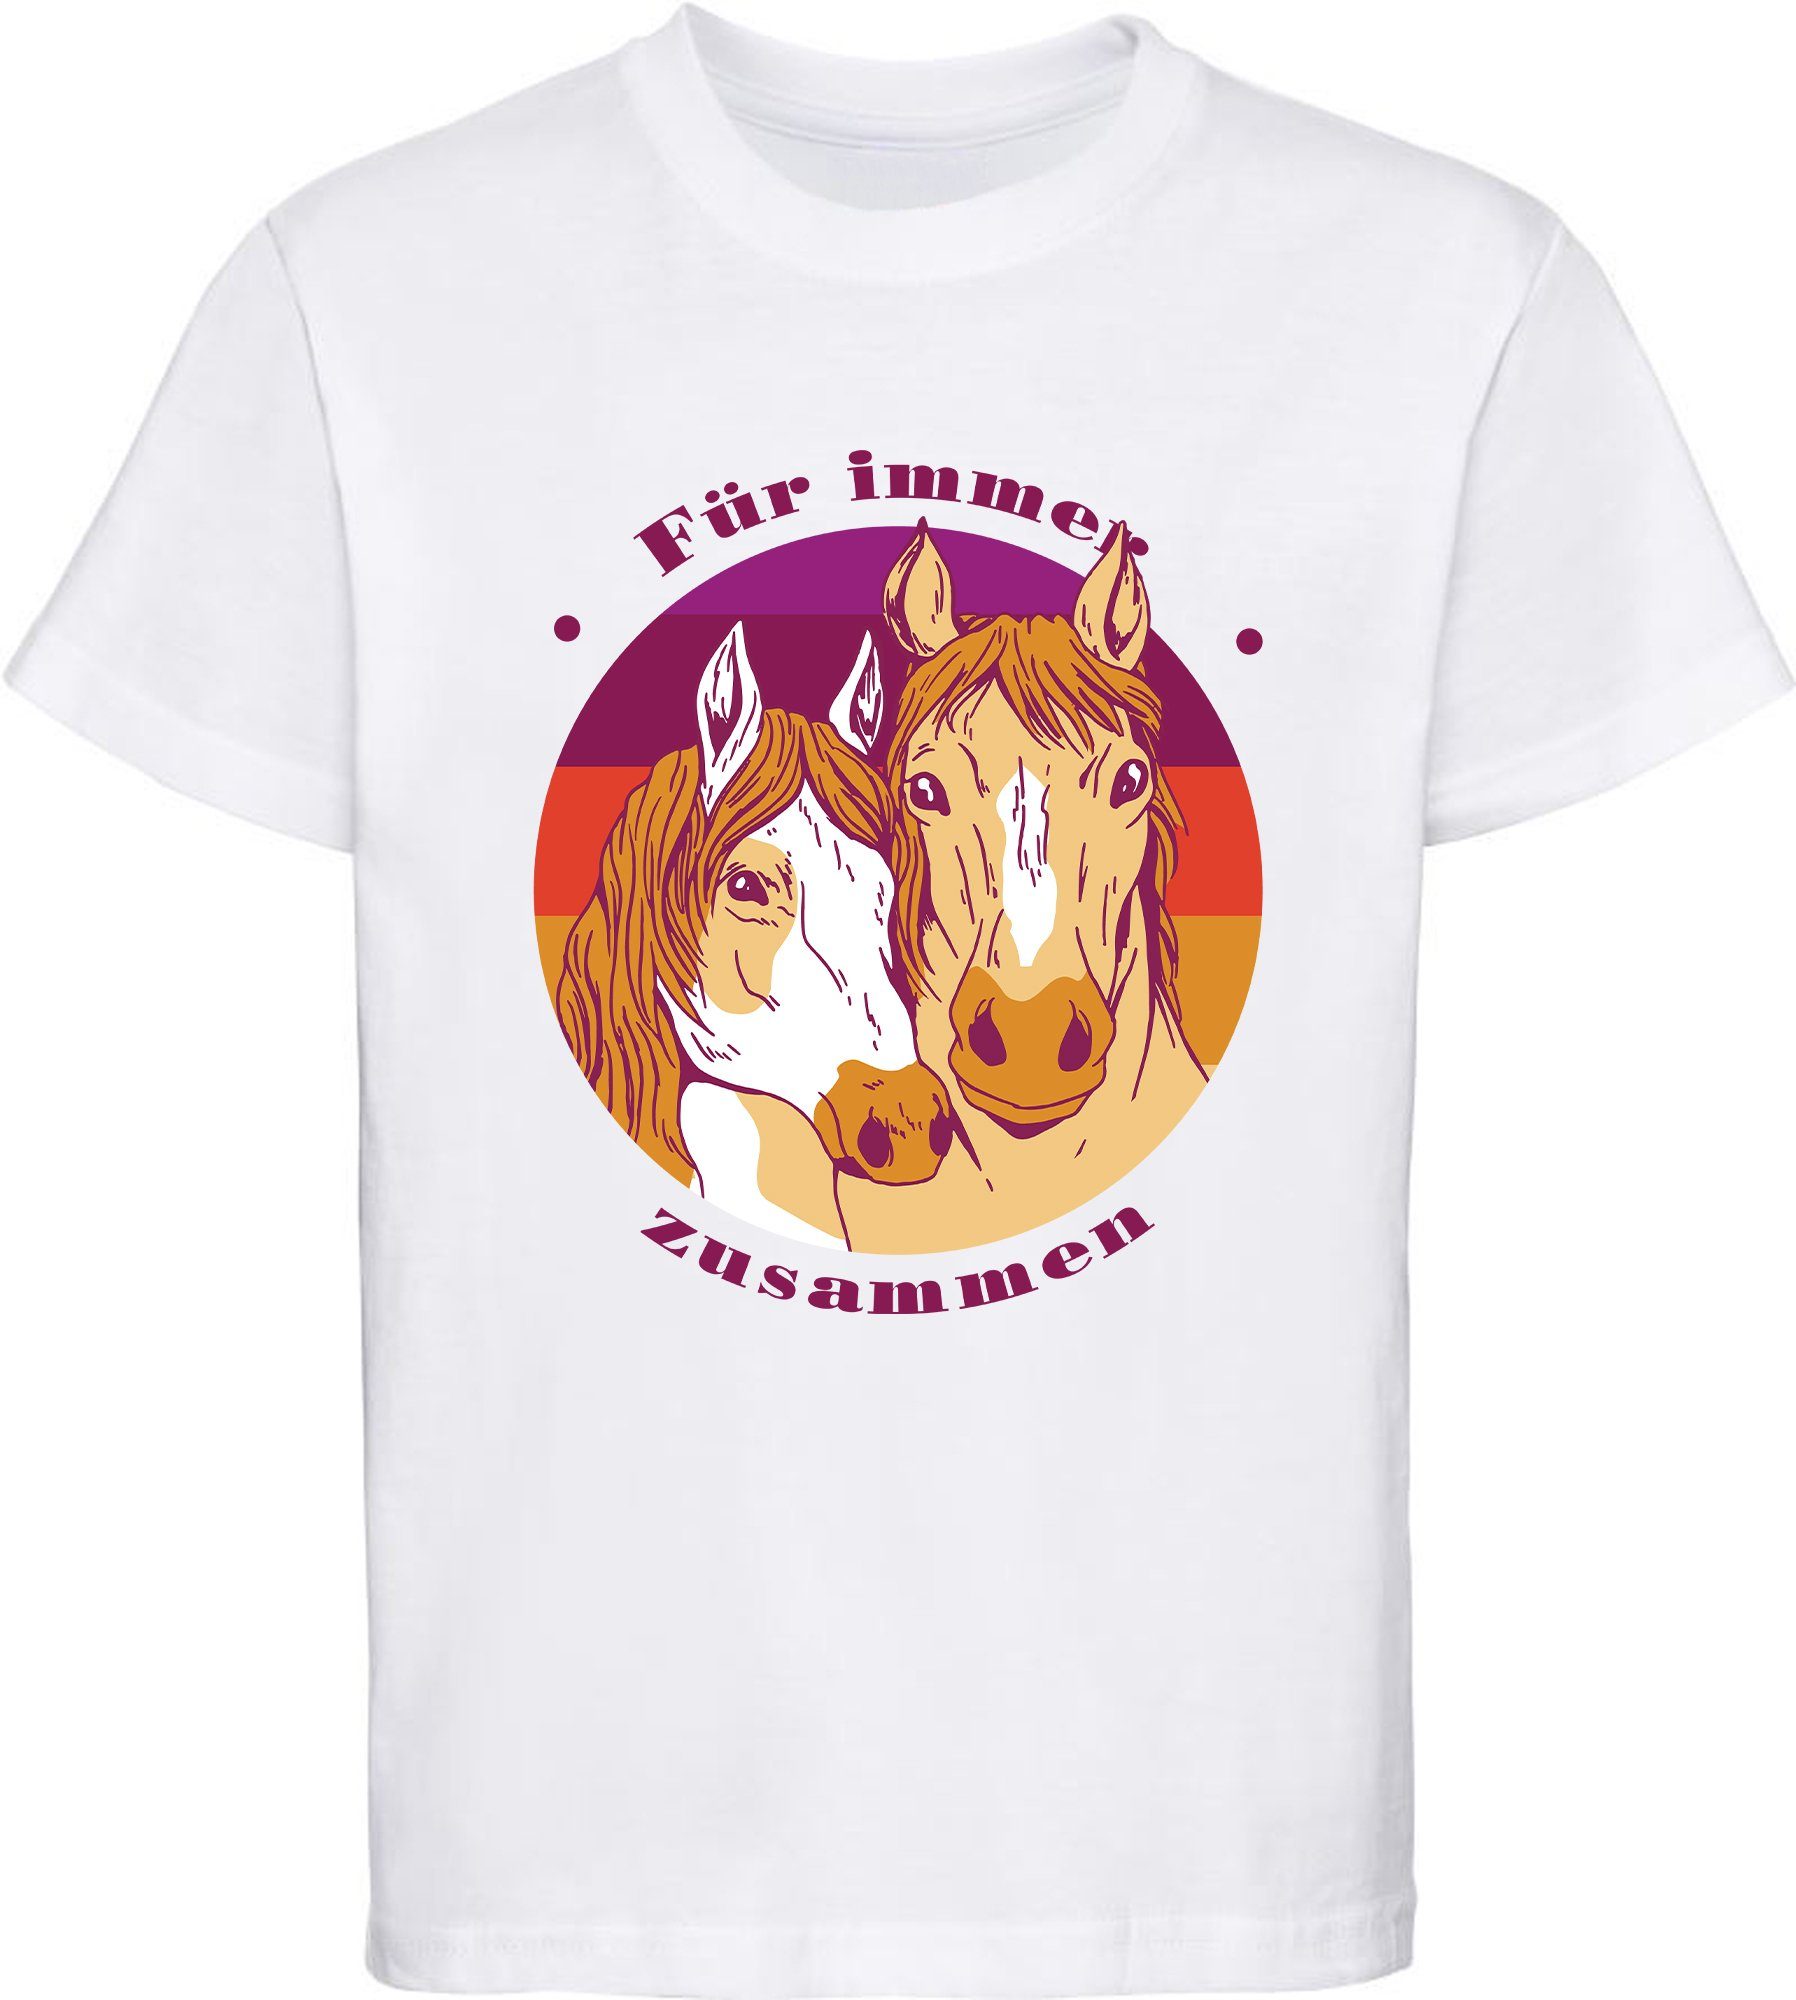 MyDesign24 Print-Shirt bedrucktes Mädchen T-Shirt zwei Pferdeköpfe Baumwollshirt mit Aufdruck, i148 weiss